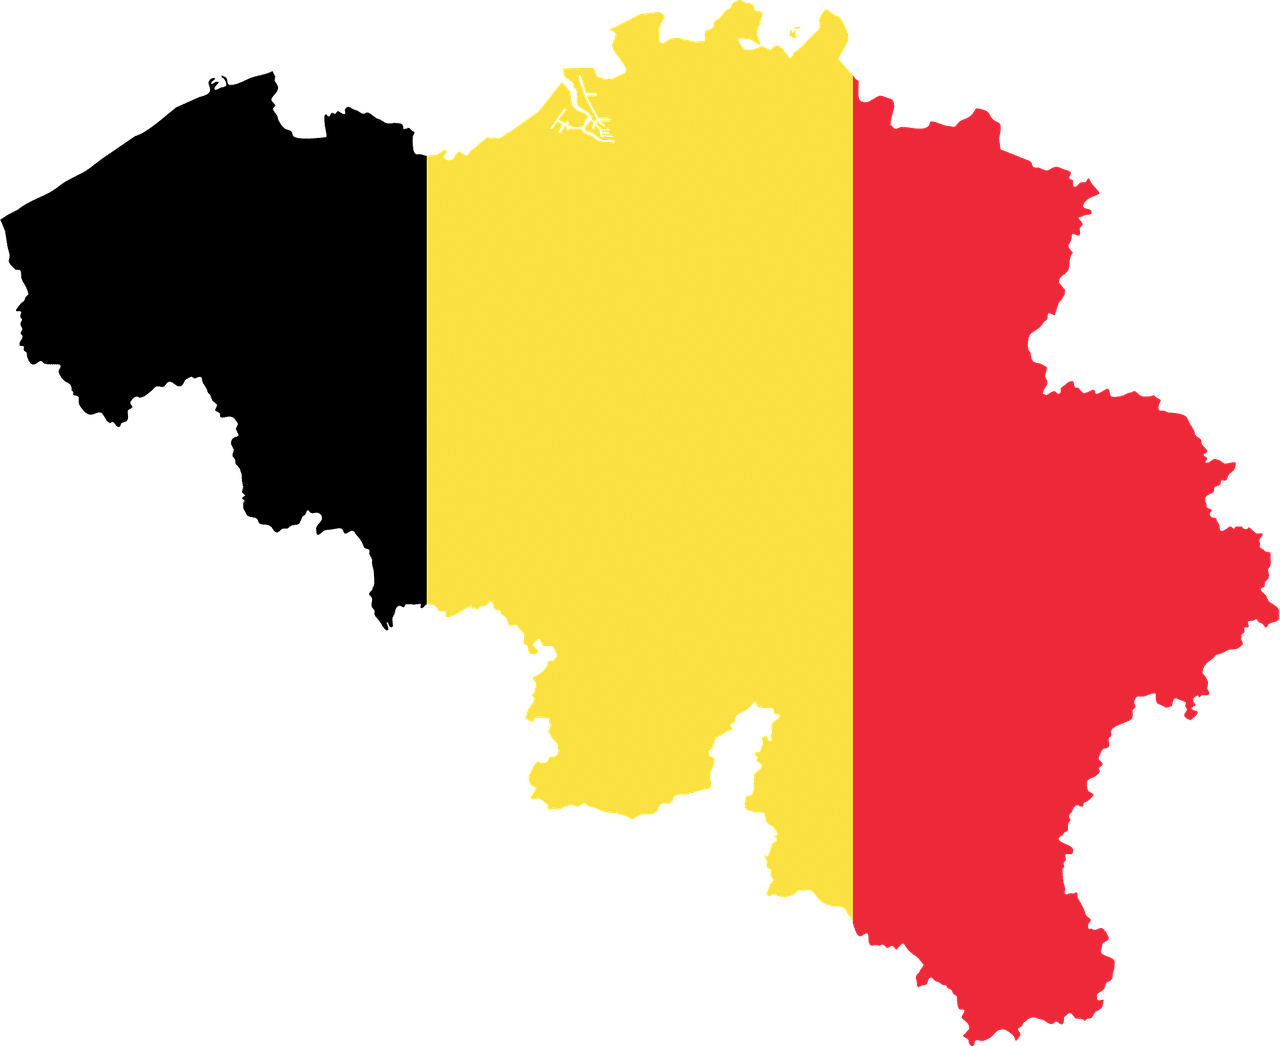 Belgium - wide 4